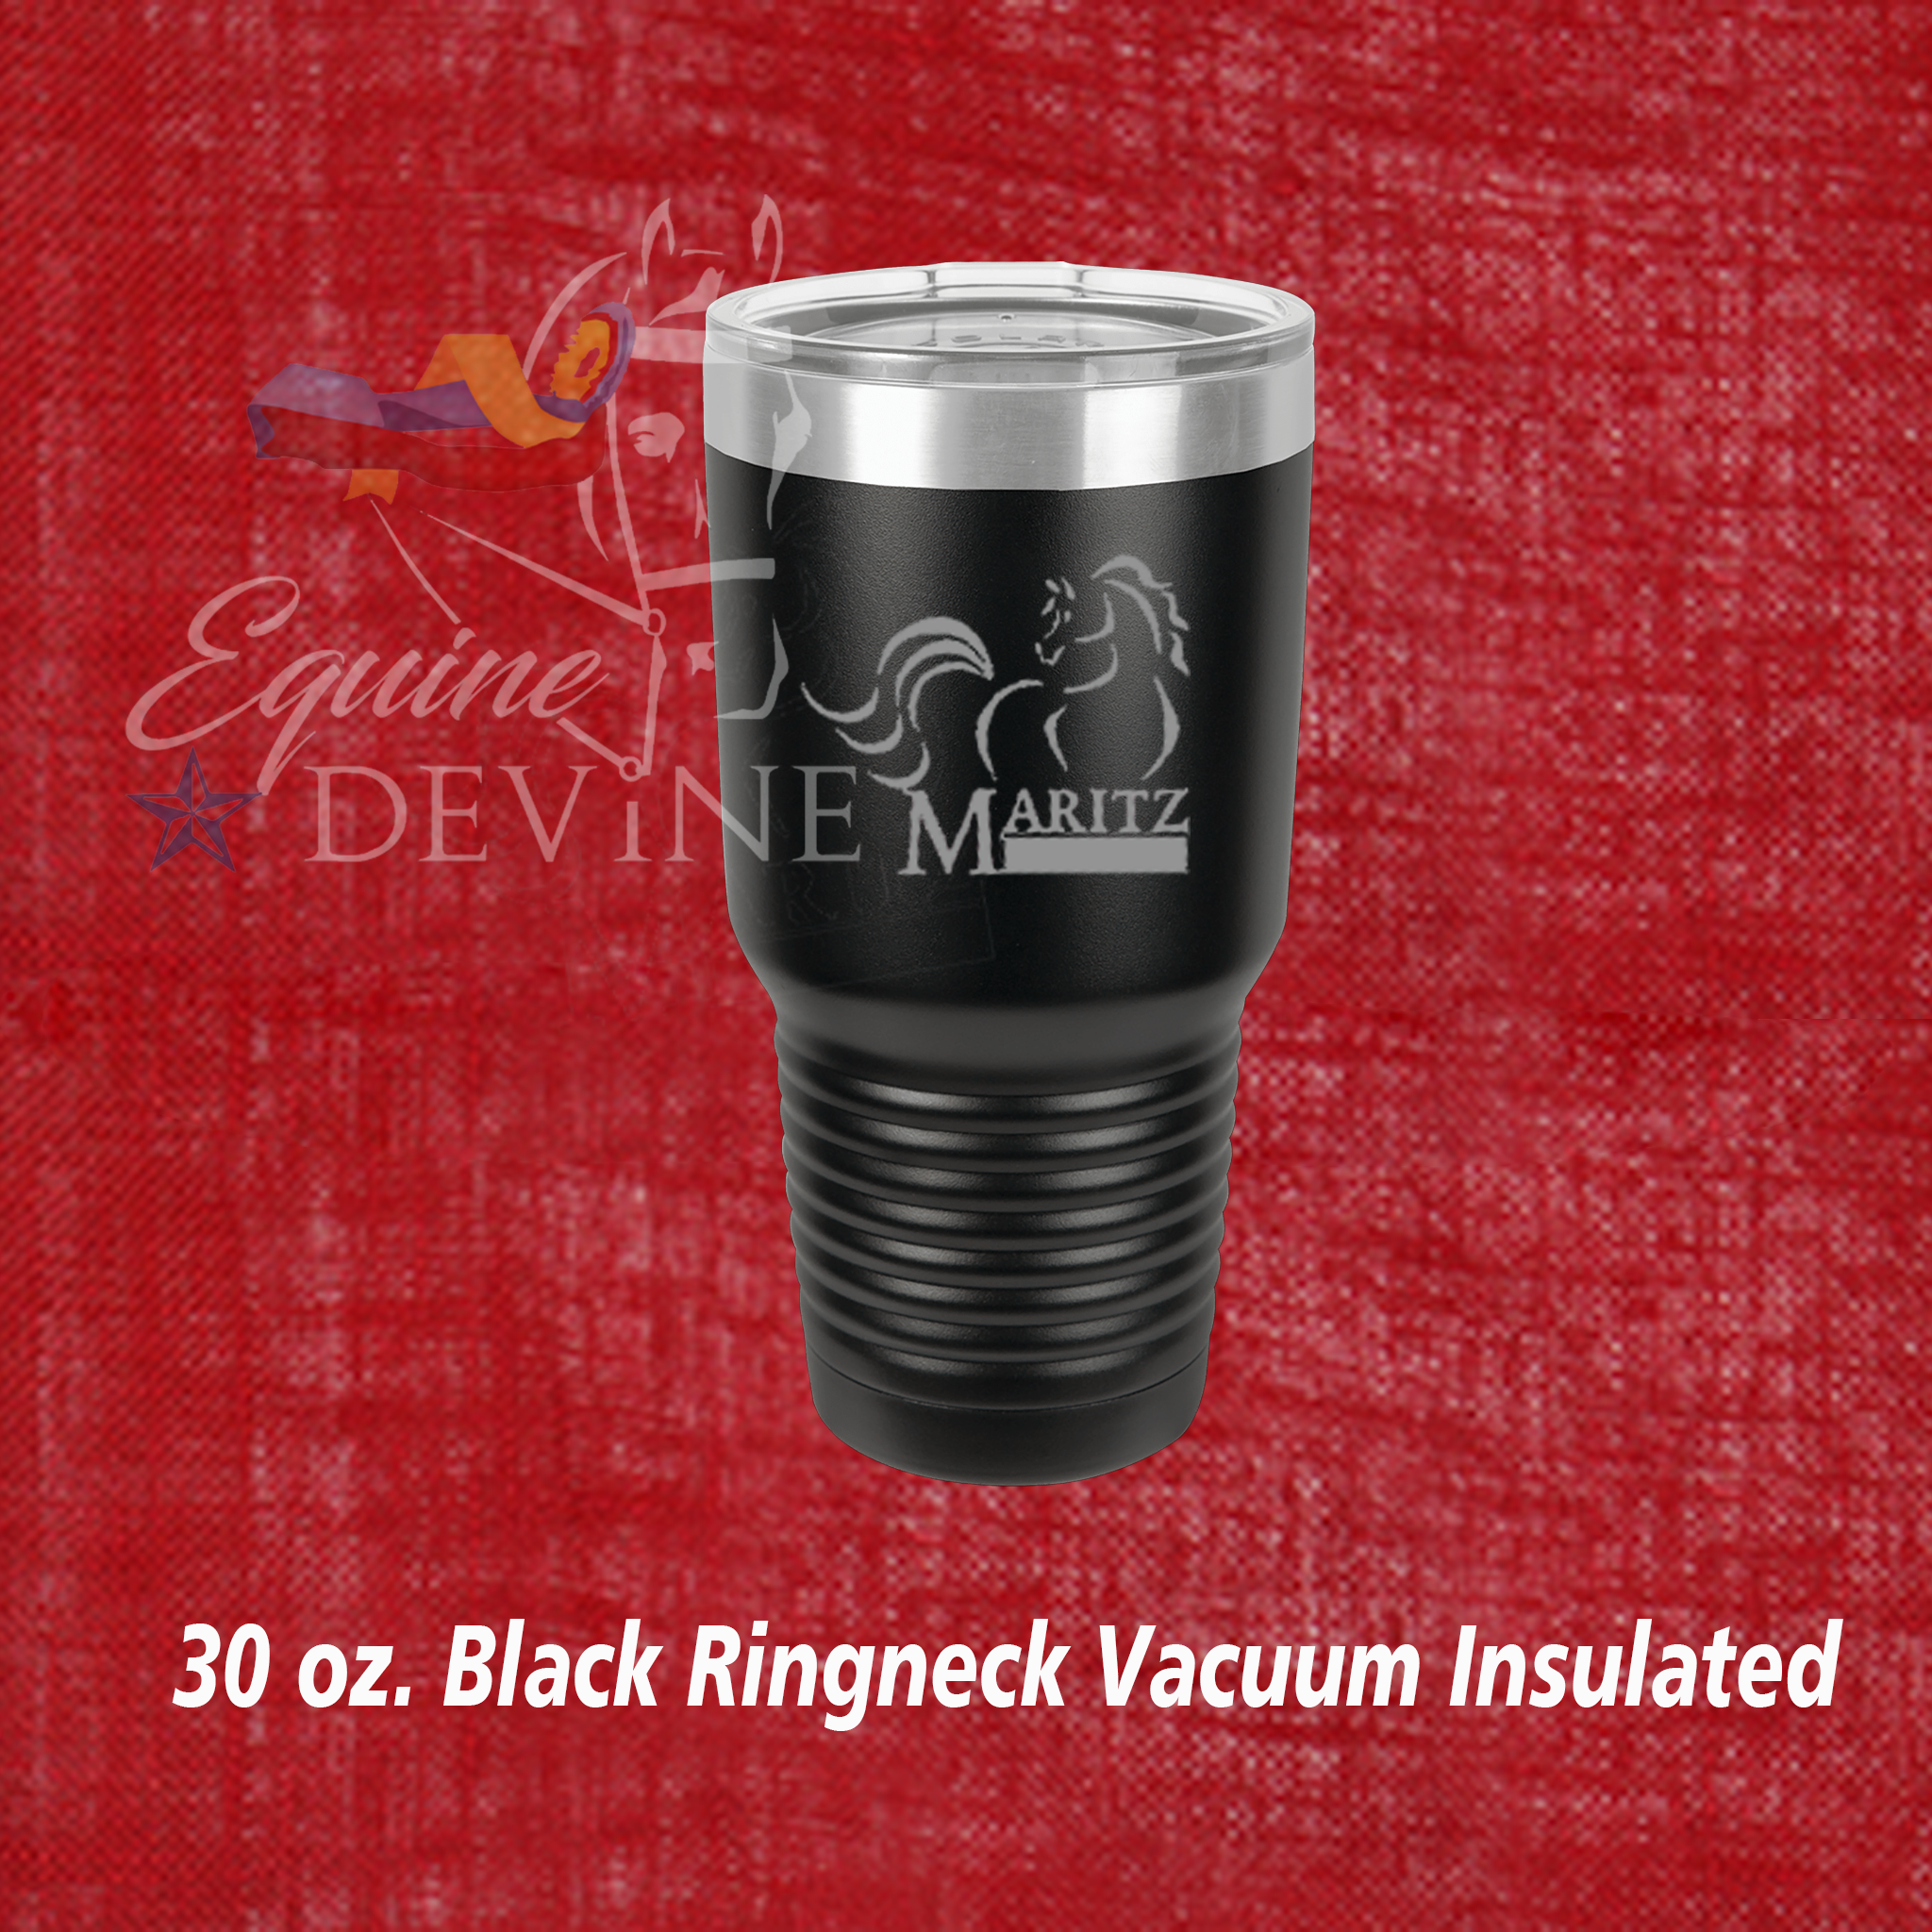 30 oz. Black Ringneck Vacuum Insulated